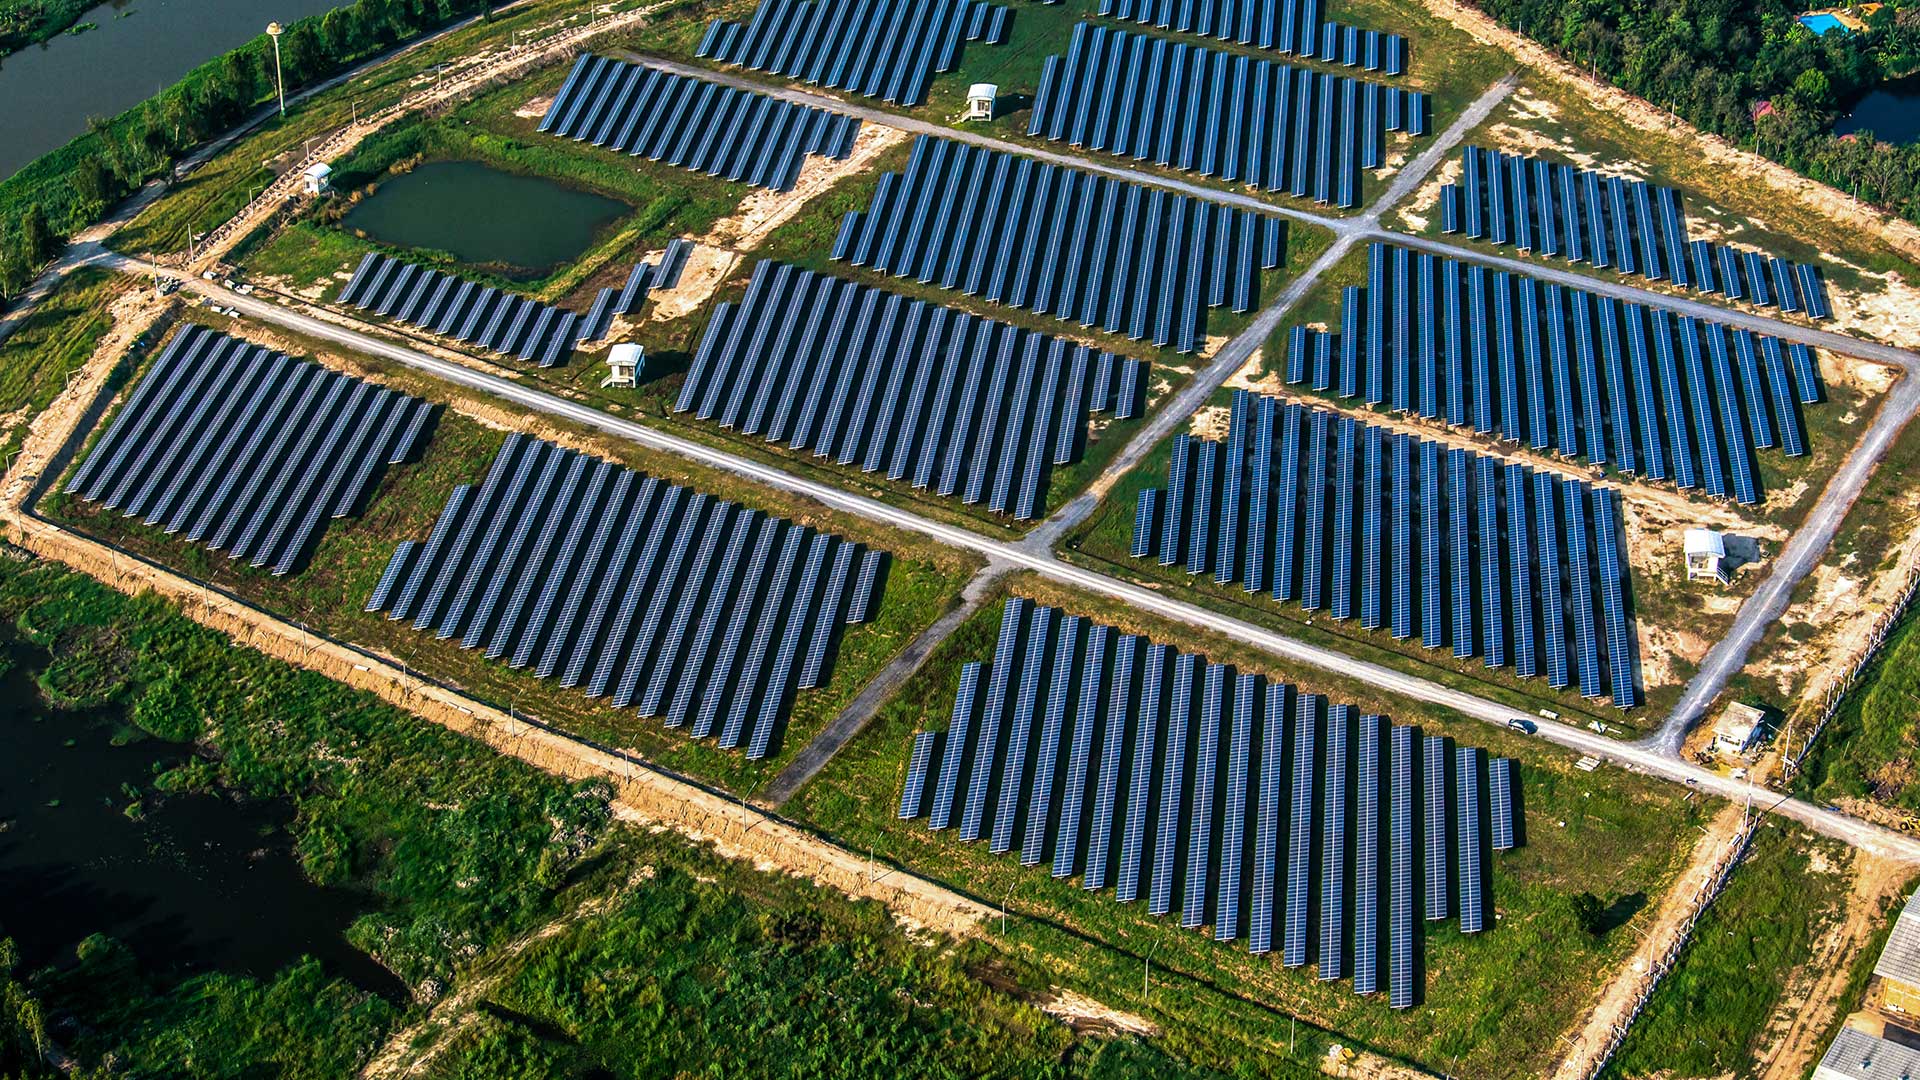 ADL Enerji | Endüstriyel Çatı Güneş Enerji Santralleri, Arazi Tipi Güneş Enerji Santralleri, Uzaktan İzleme Sistemi Bakım & Onarım, Solar Otopark Uygulamaları, Proje, Mühendislik ve Yatırım Danışmanlığı, Enerji Verimliliği Danışmanlığı, Konya Güneş Enerjisi